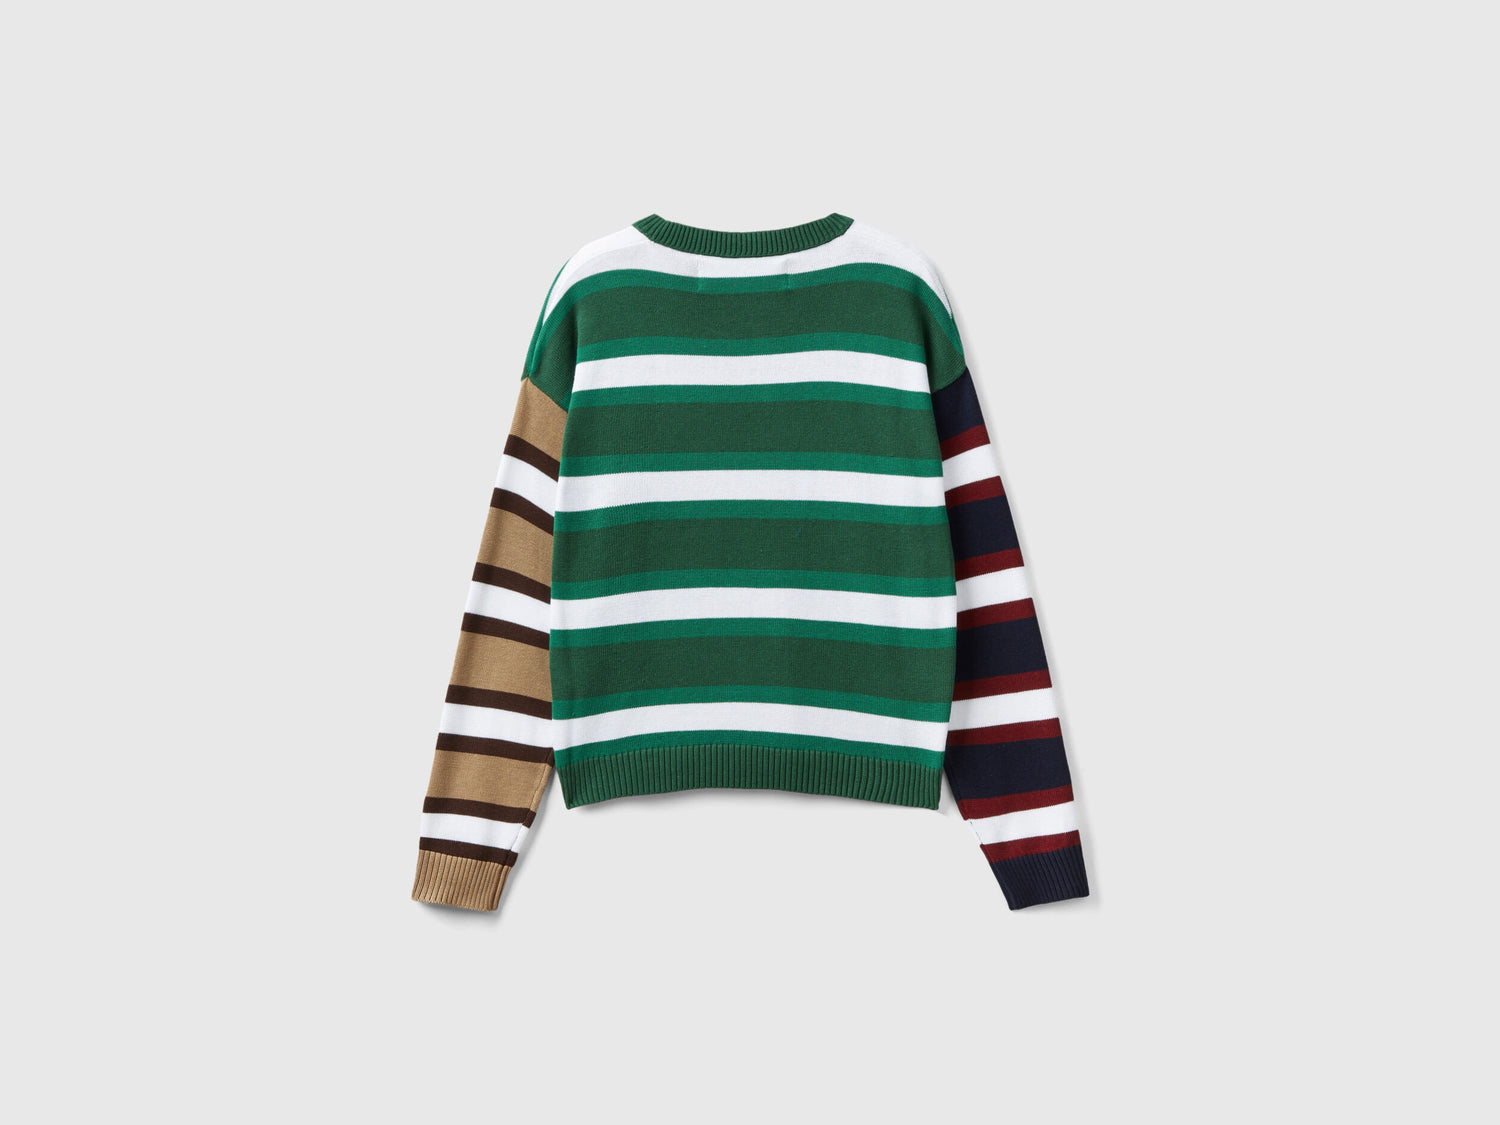 Striped Sweater In Pure Cotton_1298E1069_2E5_05